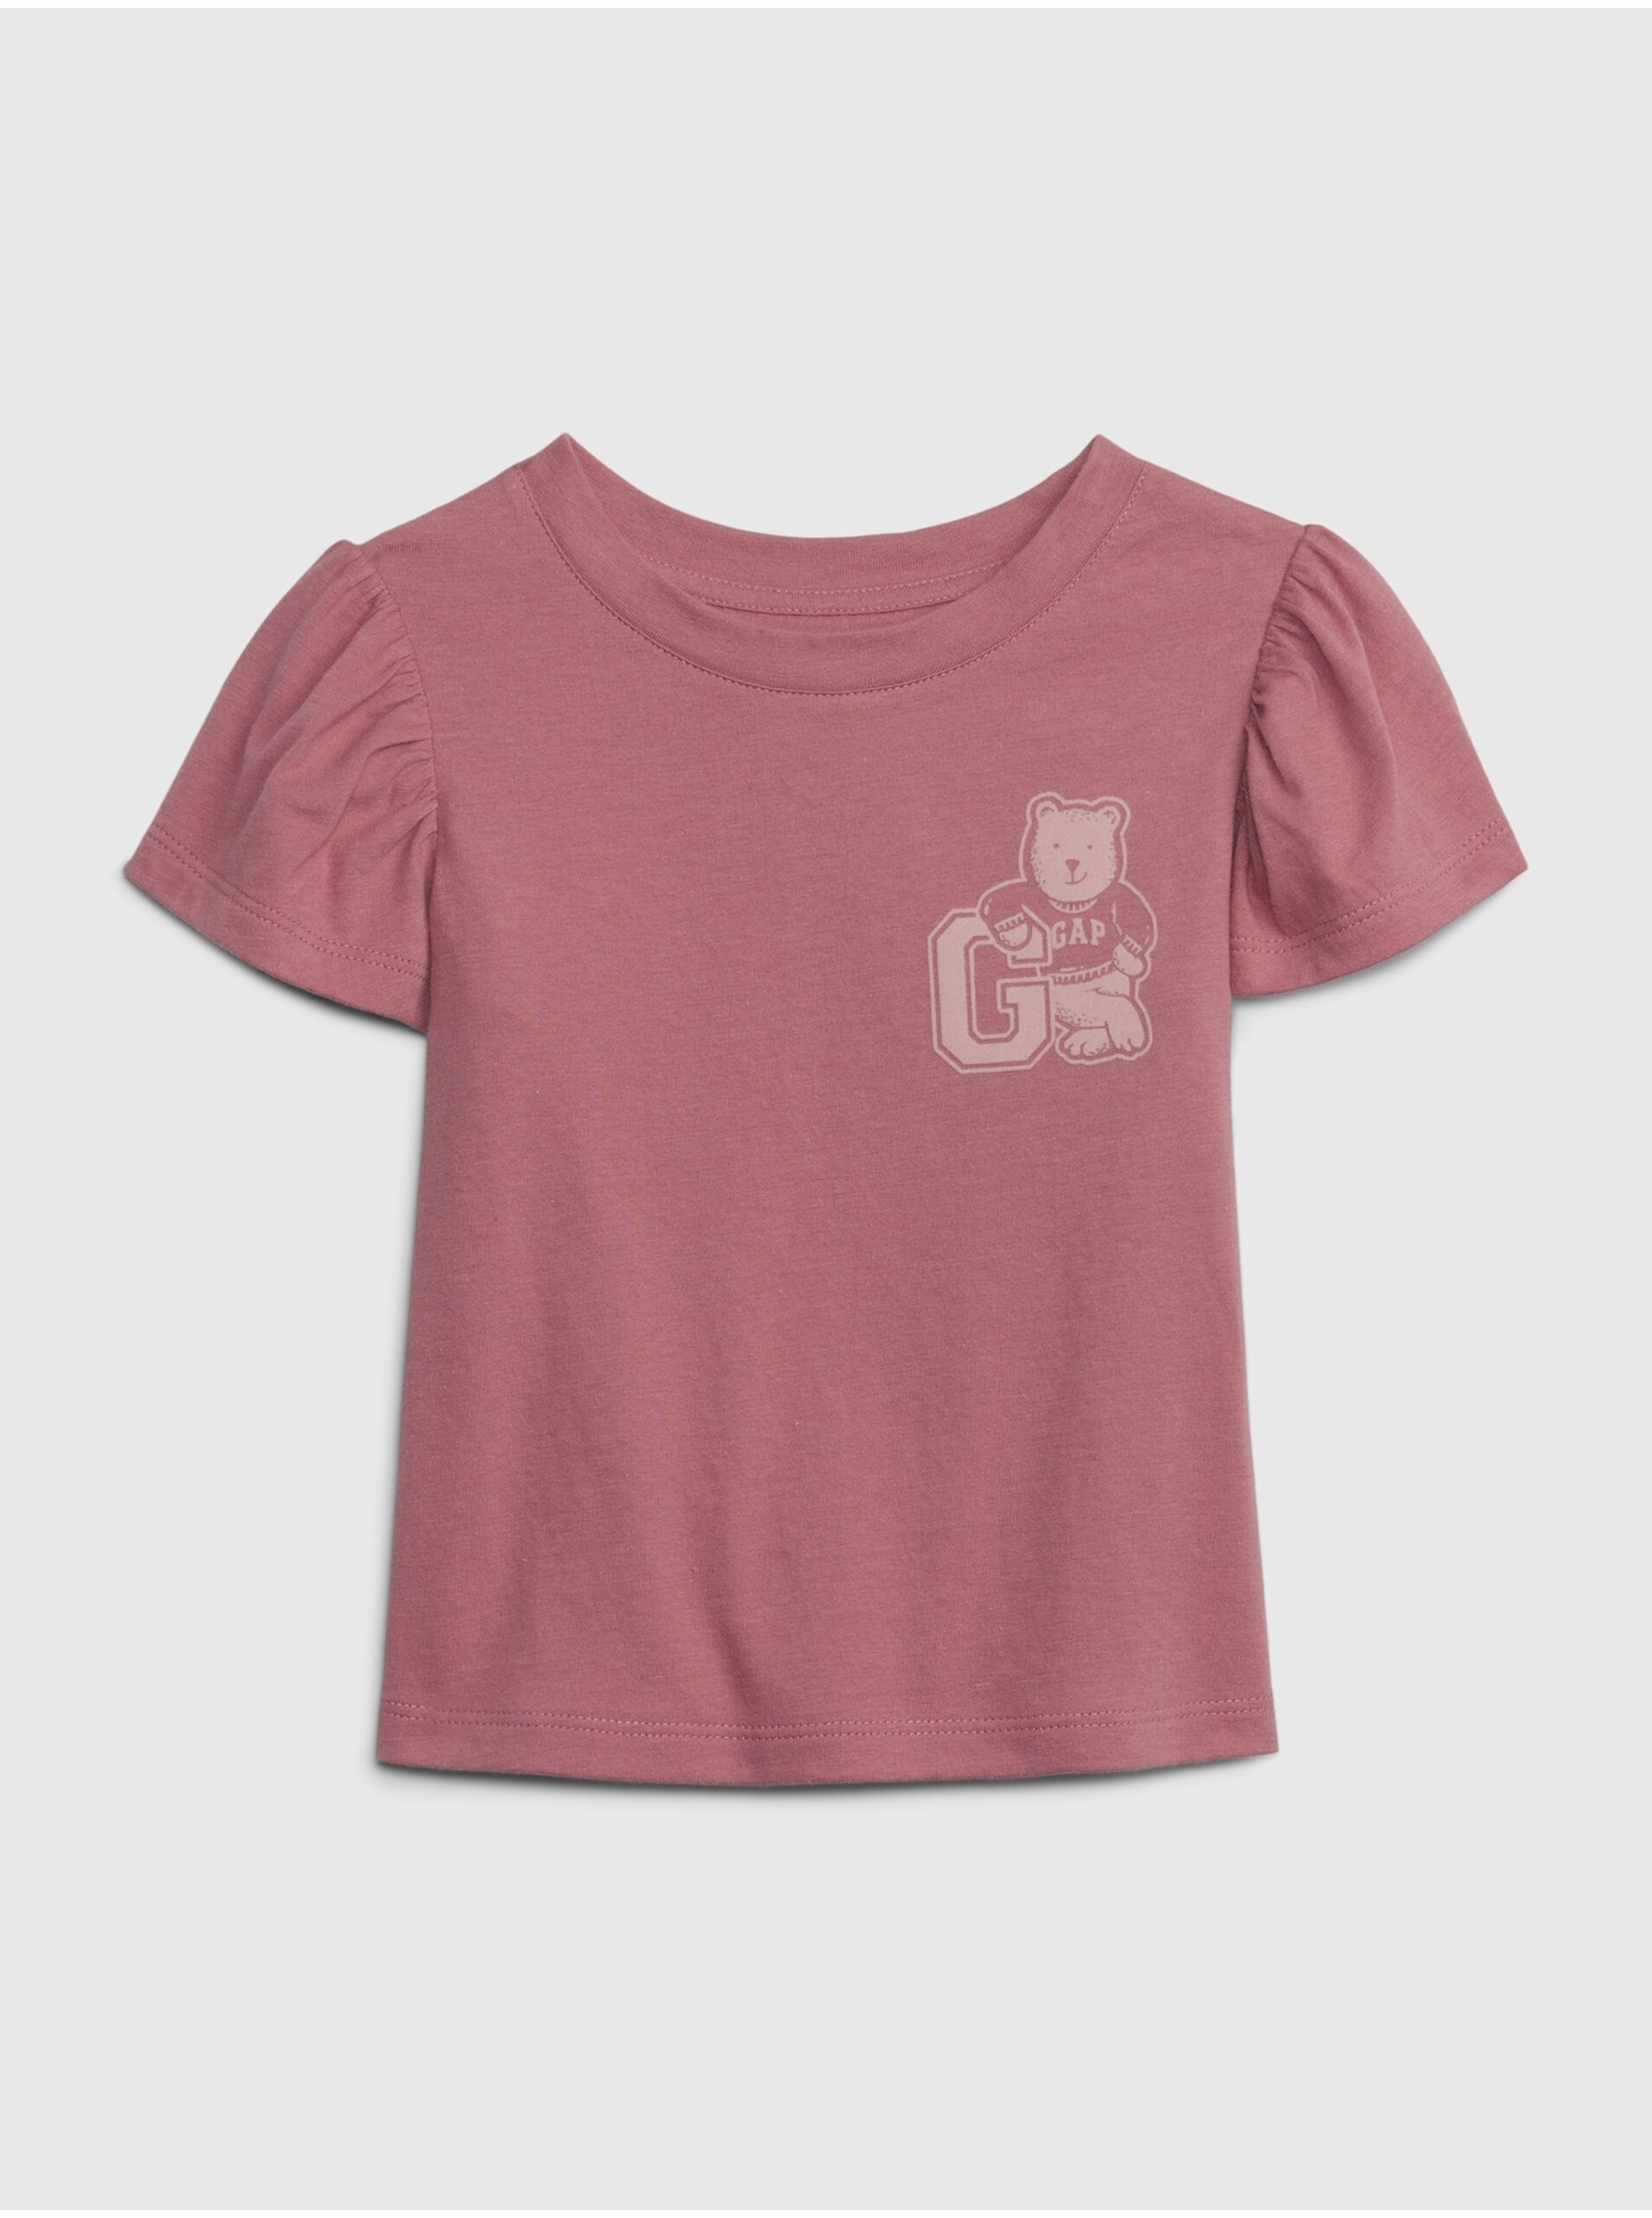 Lacno Staroružové dievčenské tričko Gap